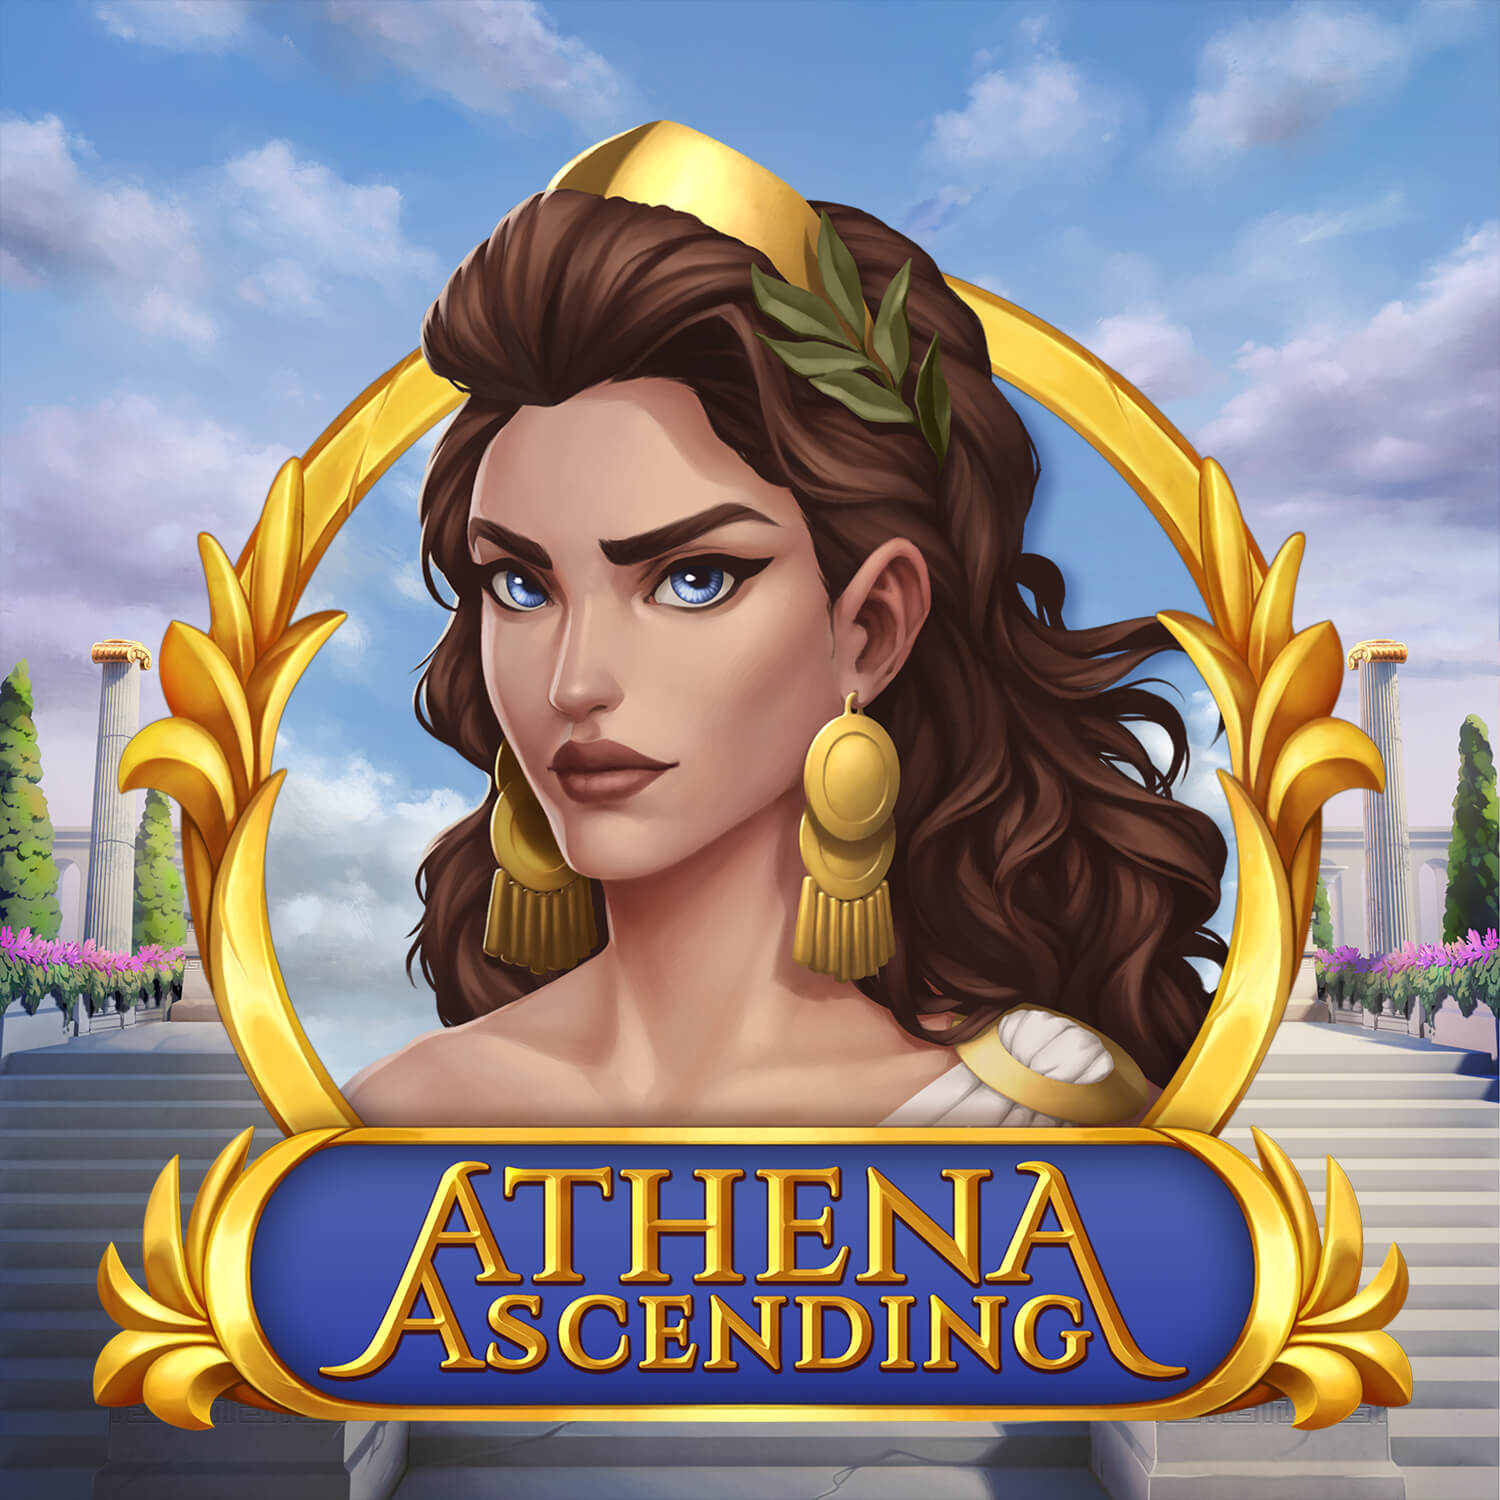 Athena Ascending gokkast